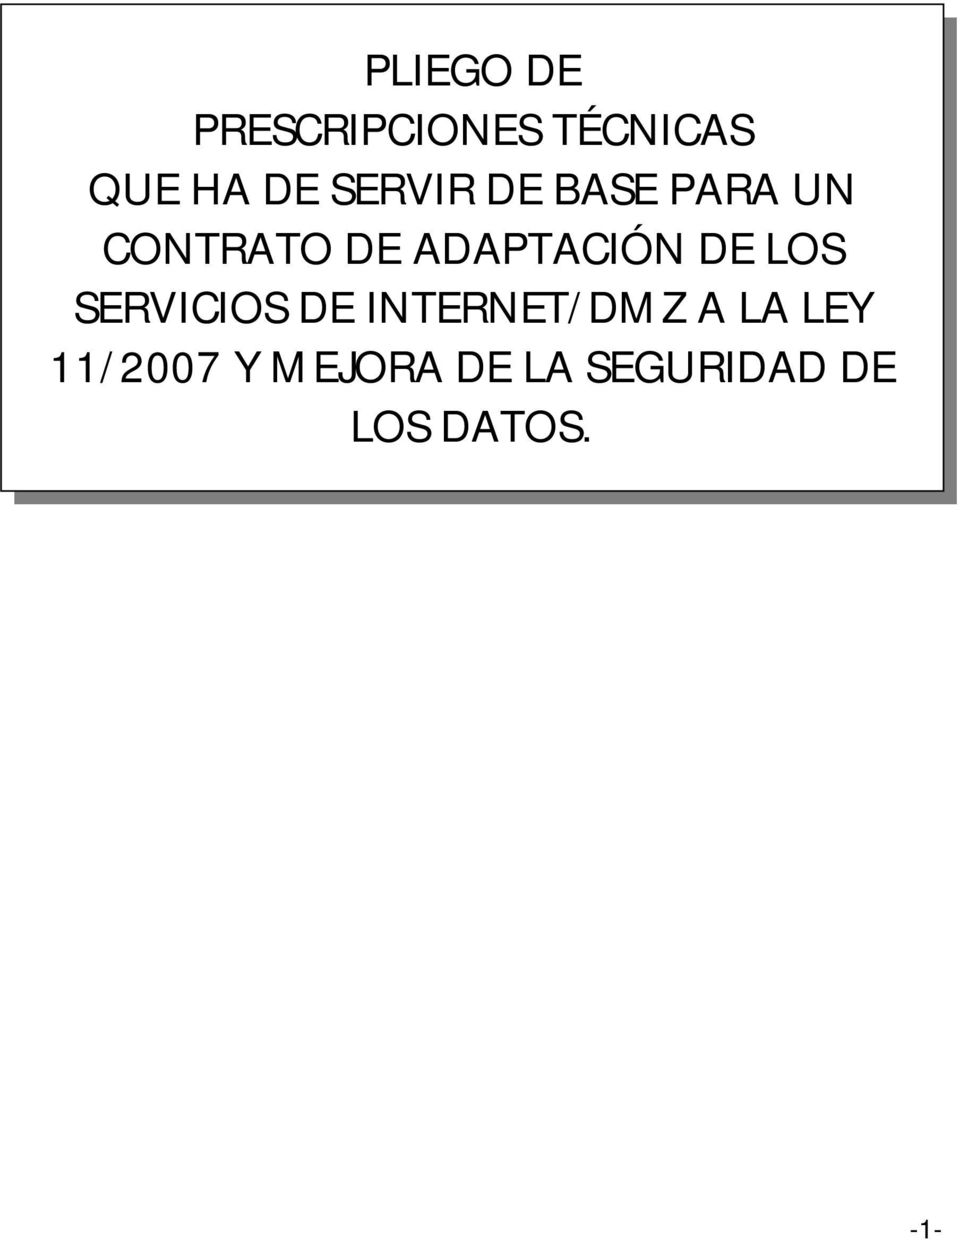 DE LOS SERVICIOS DE INTERNET/DMZ A LA LEY